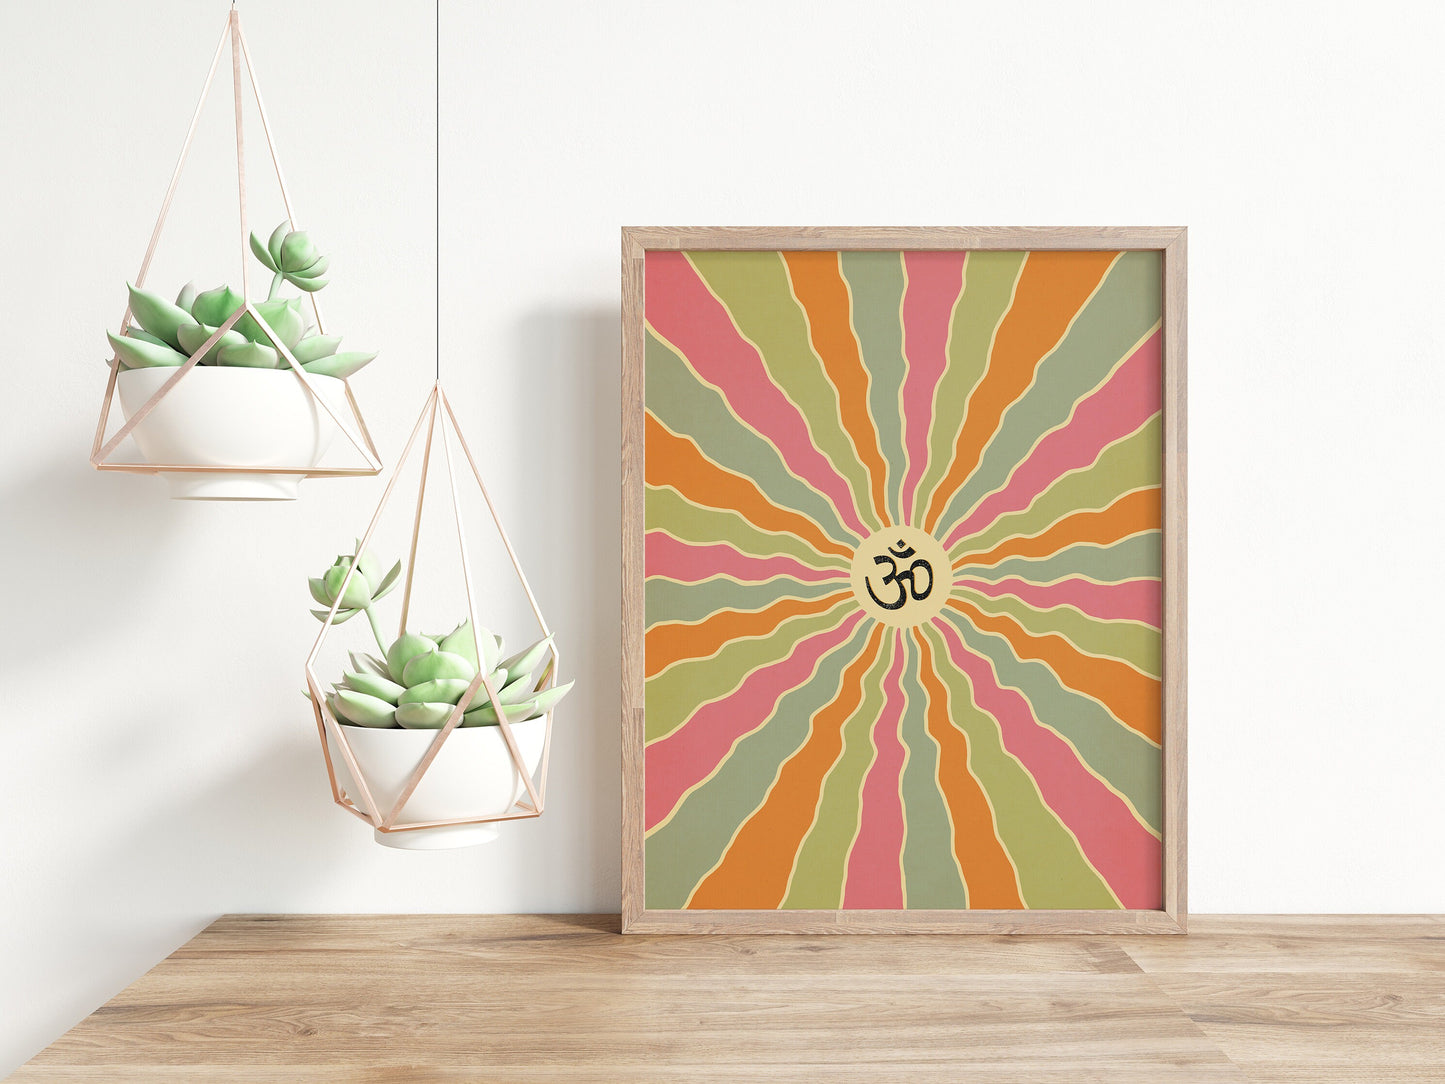 Om in sanskrit on a colorful spiral design poster in wood frame mockup